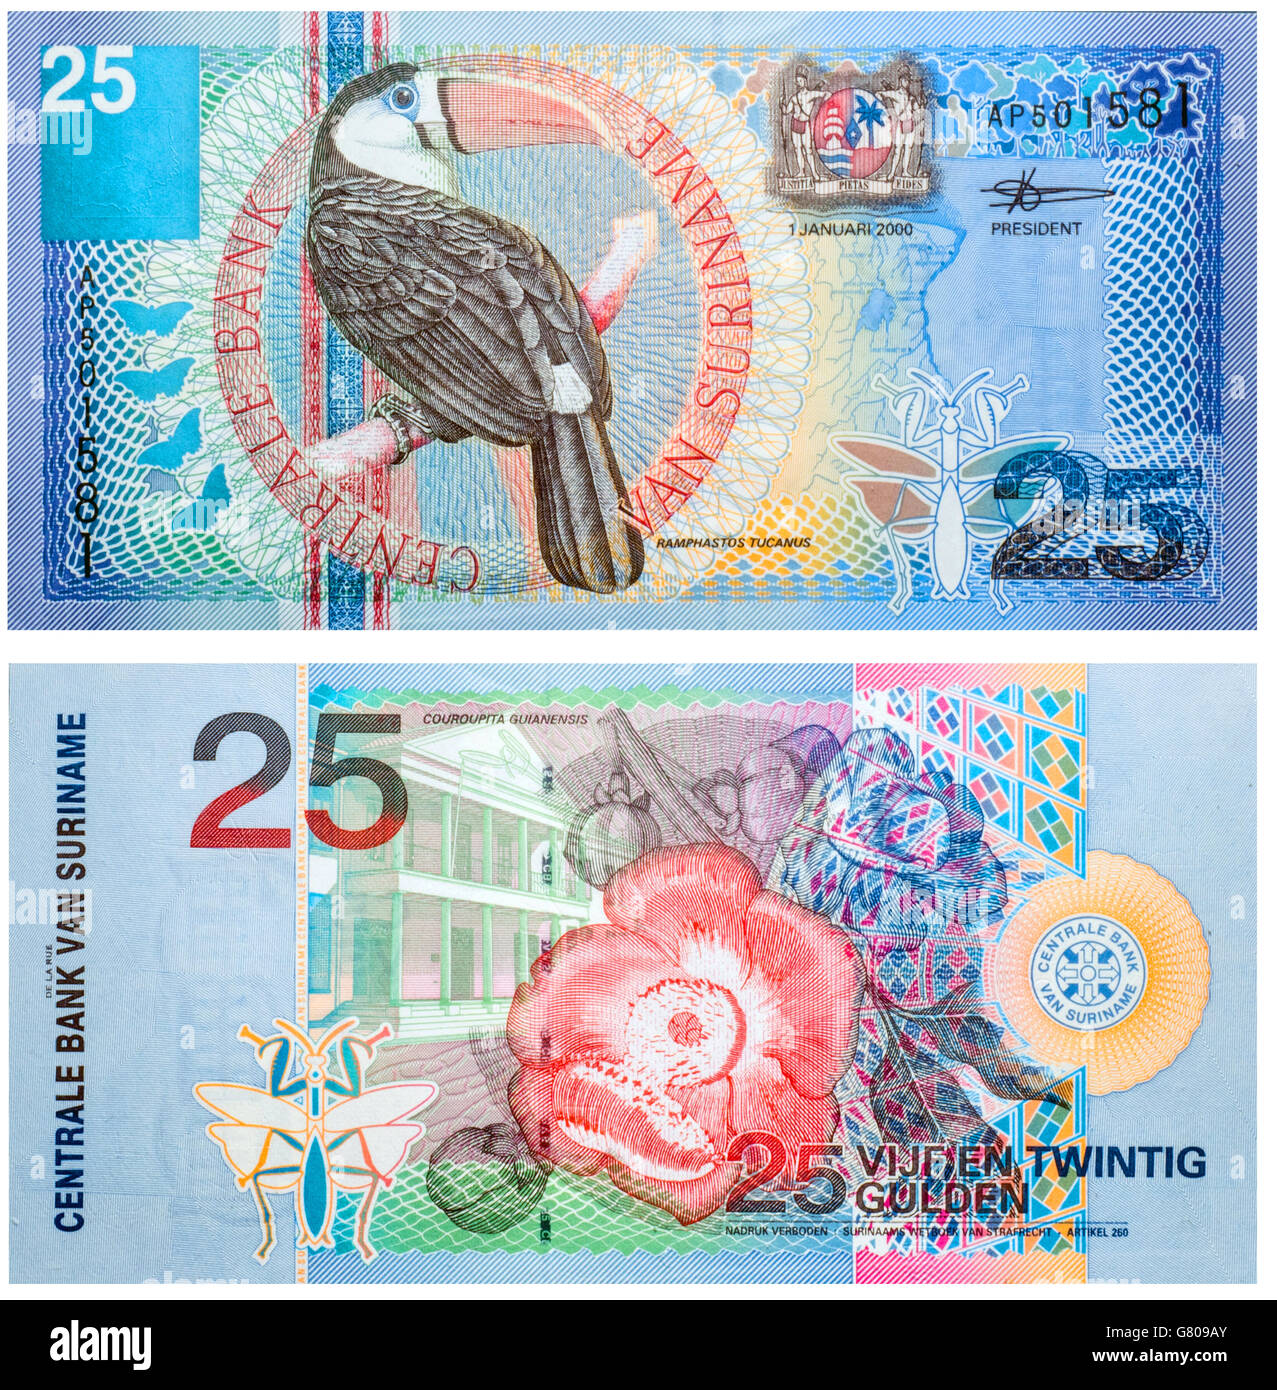 La banconota 25 Gulden Suriname fronte e retro isolato su bianco emesso su 2000. Rosso-fatturati toucan sulla parte anteriore e un fiore sul retro Foto Stock